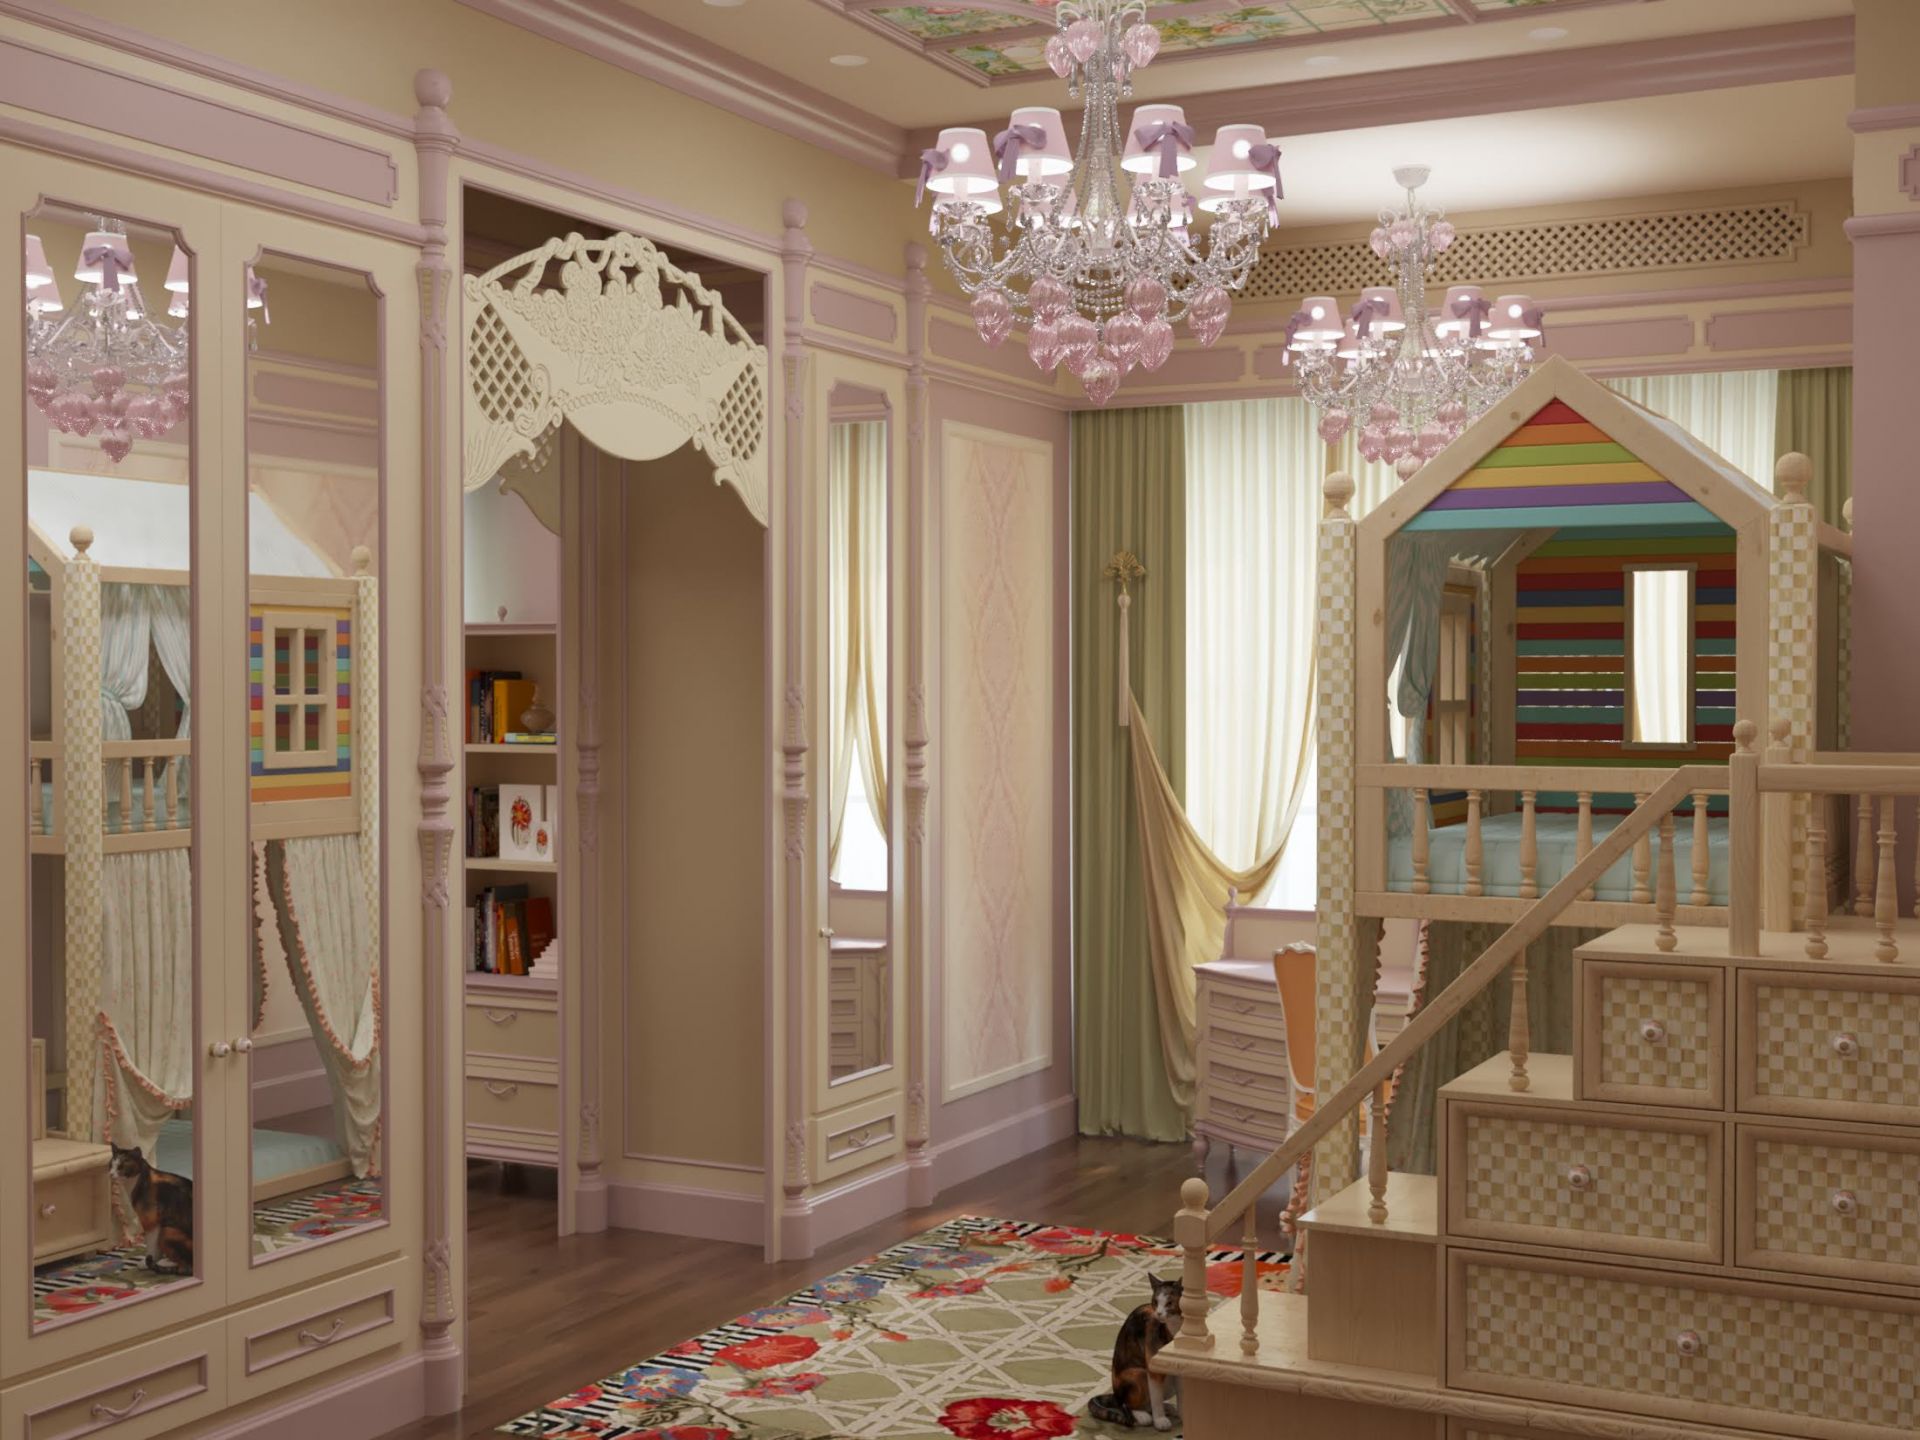 Design, Children’s bedroom design